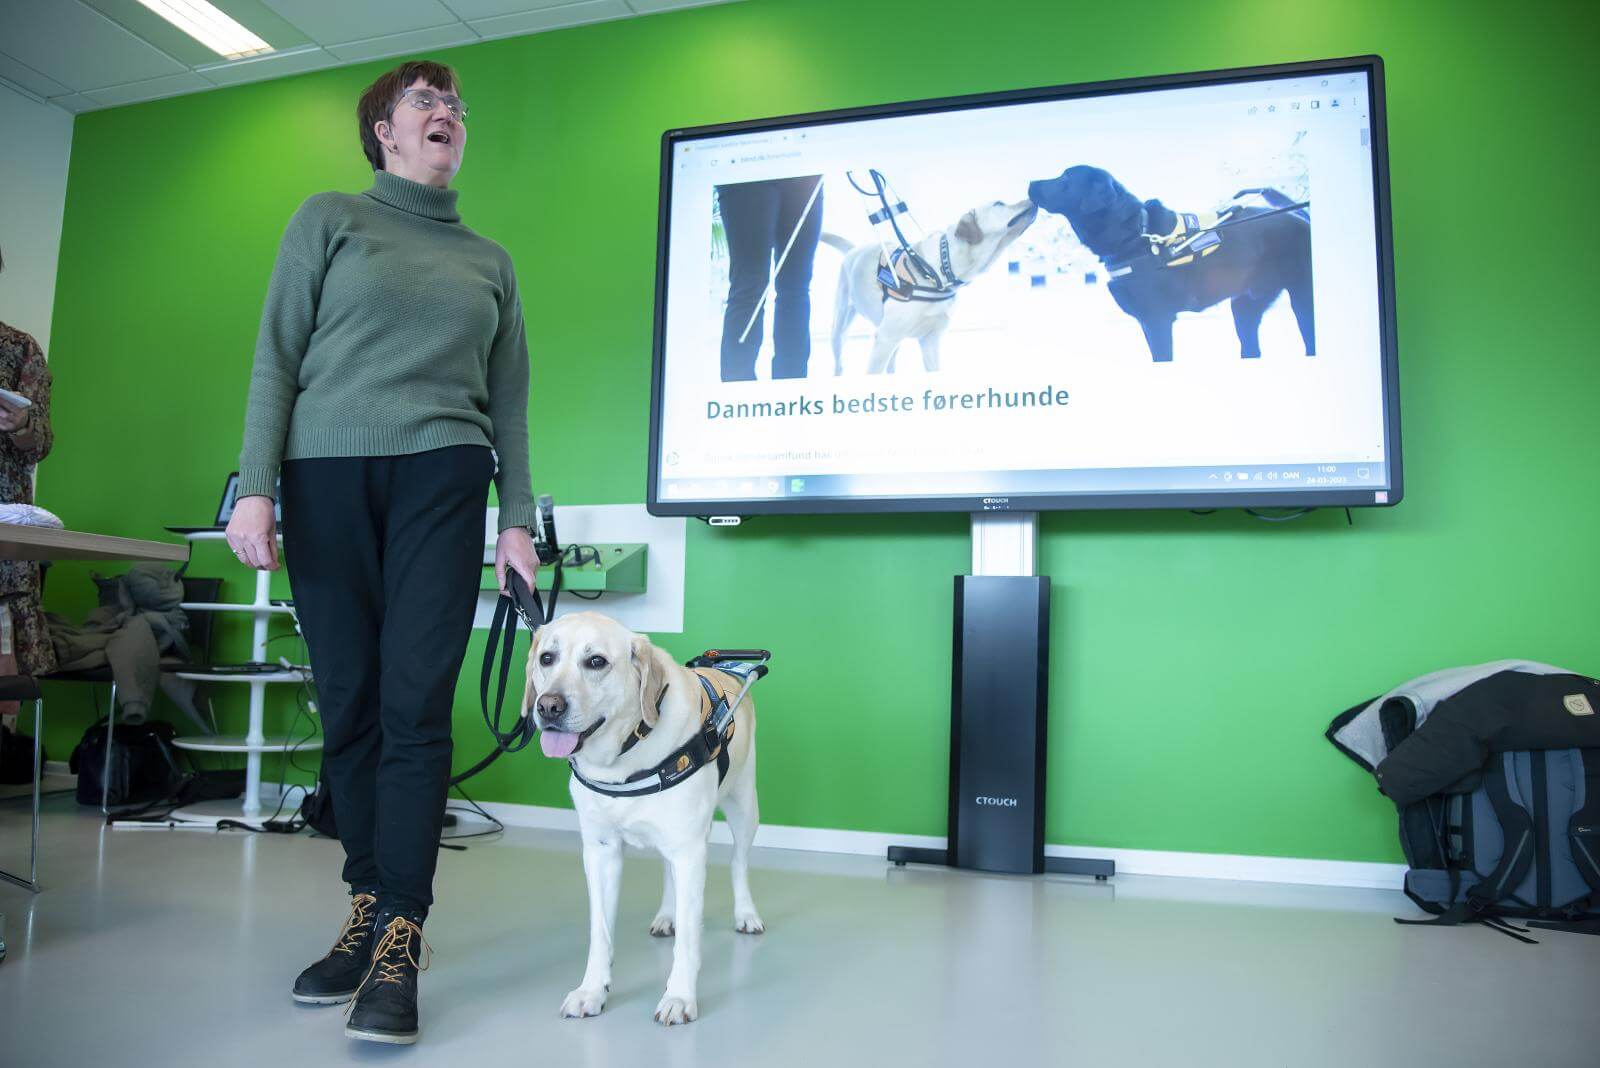 Lene og førerhunden Ronja står foran en skærm, der viser billede af førerhunde 